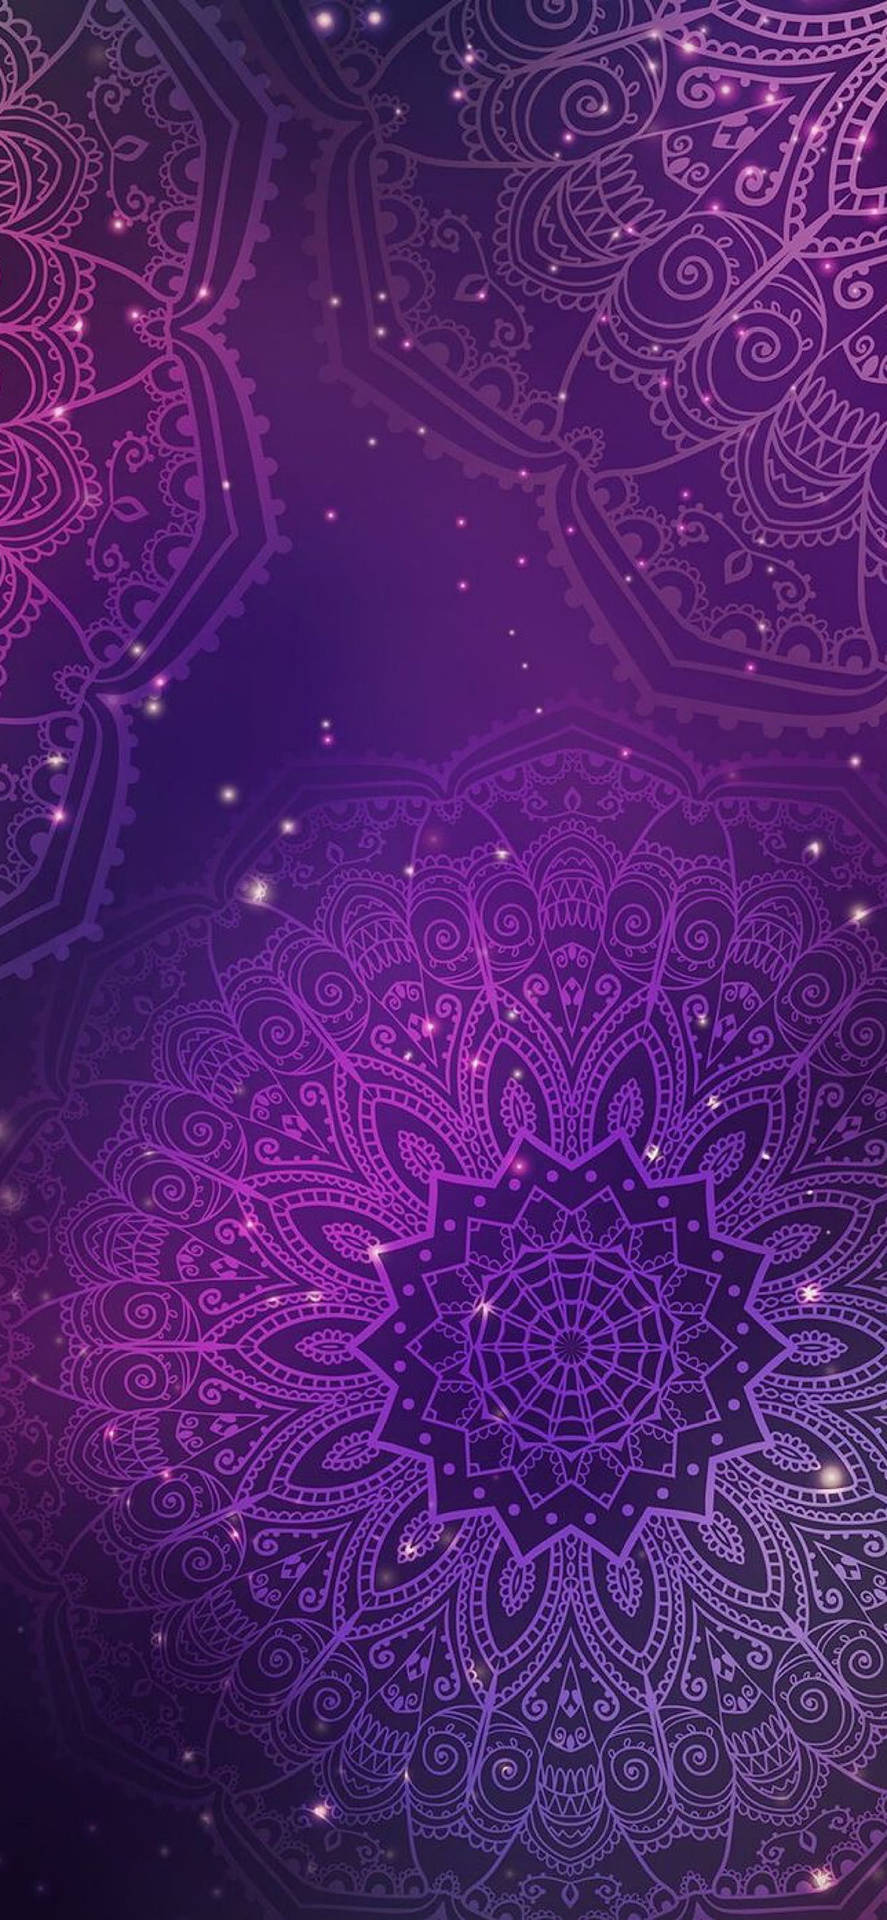 Aesthetic Boho Purple Mandala Background